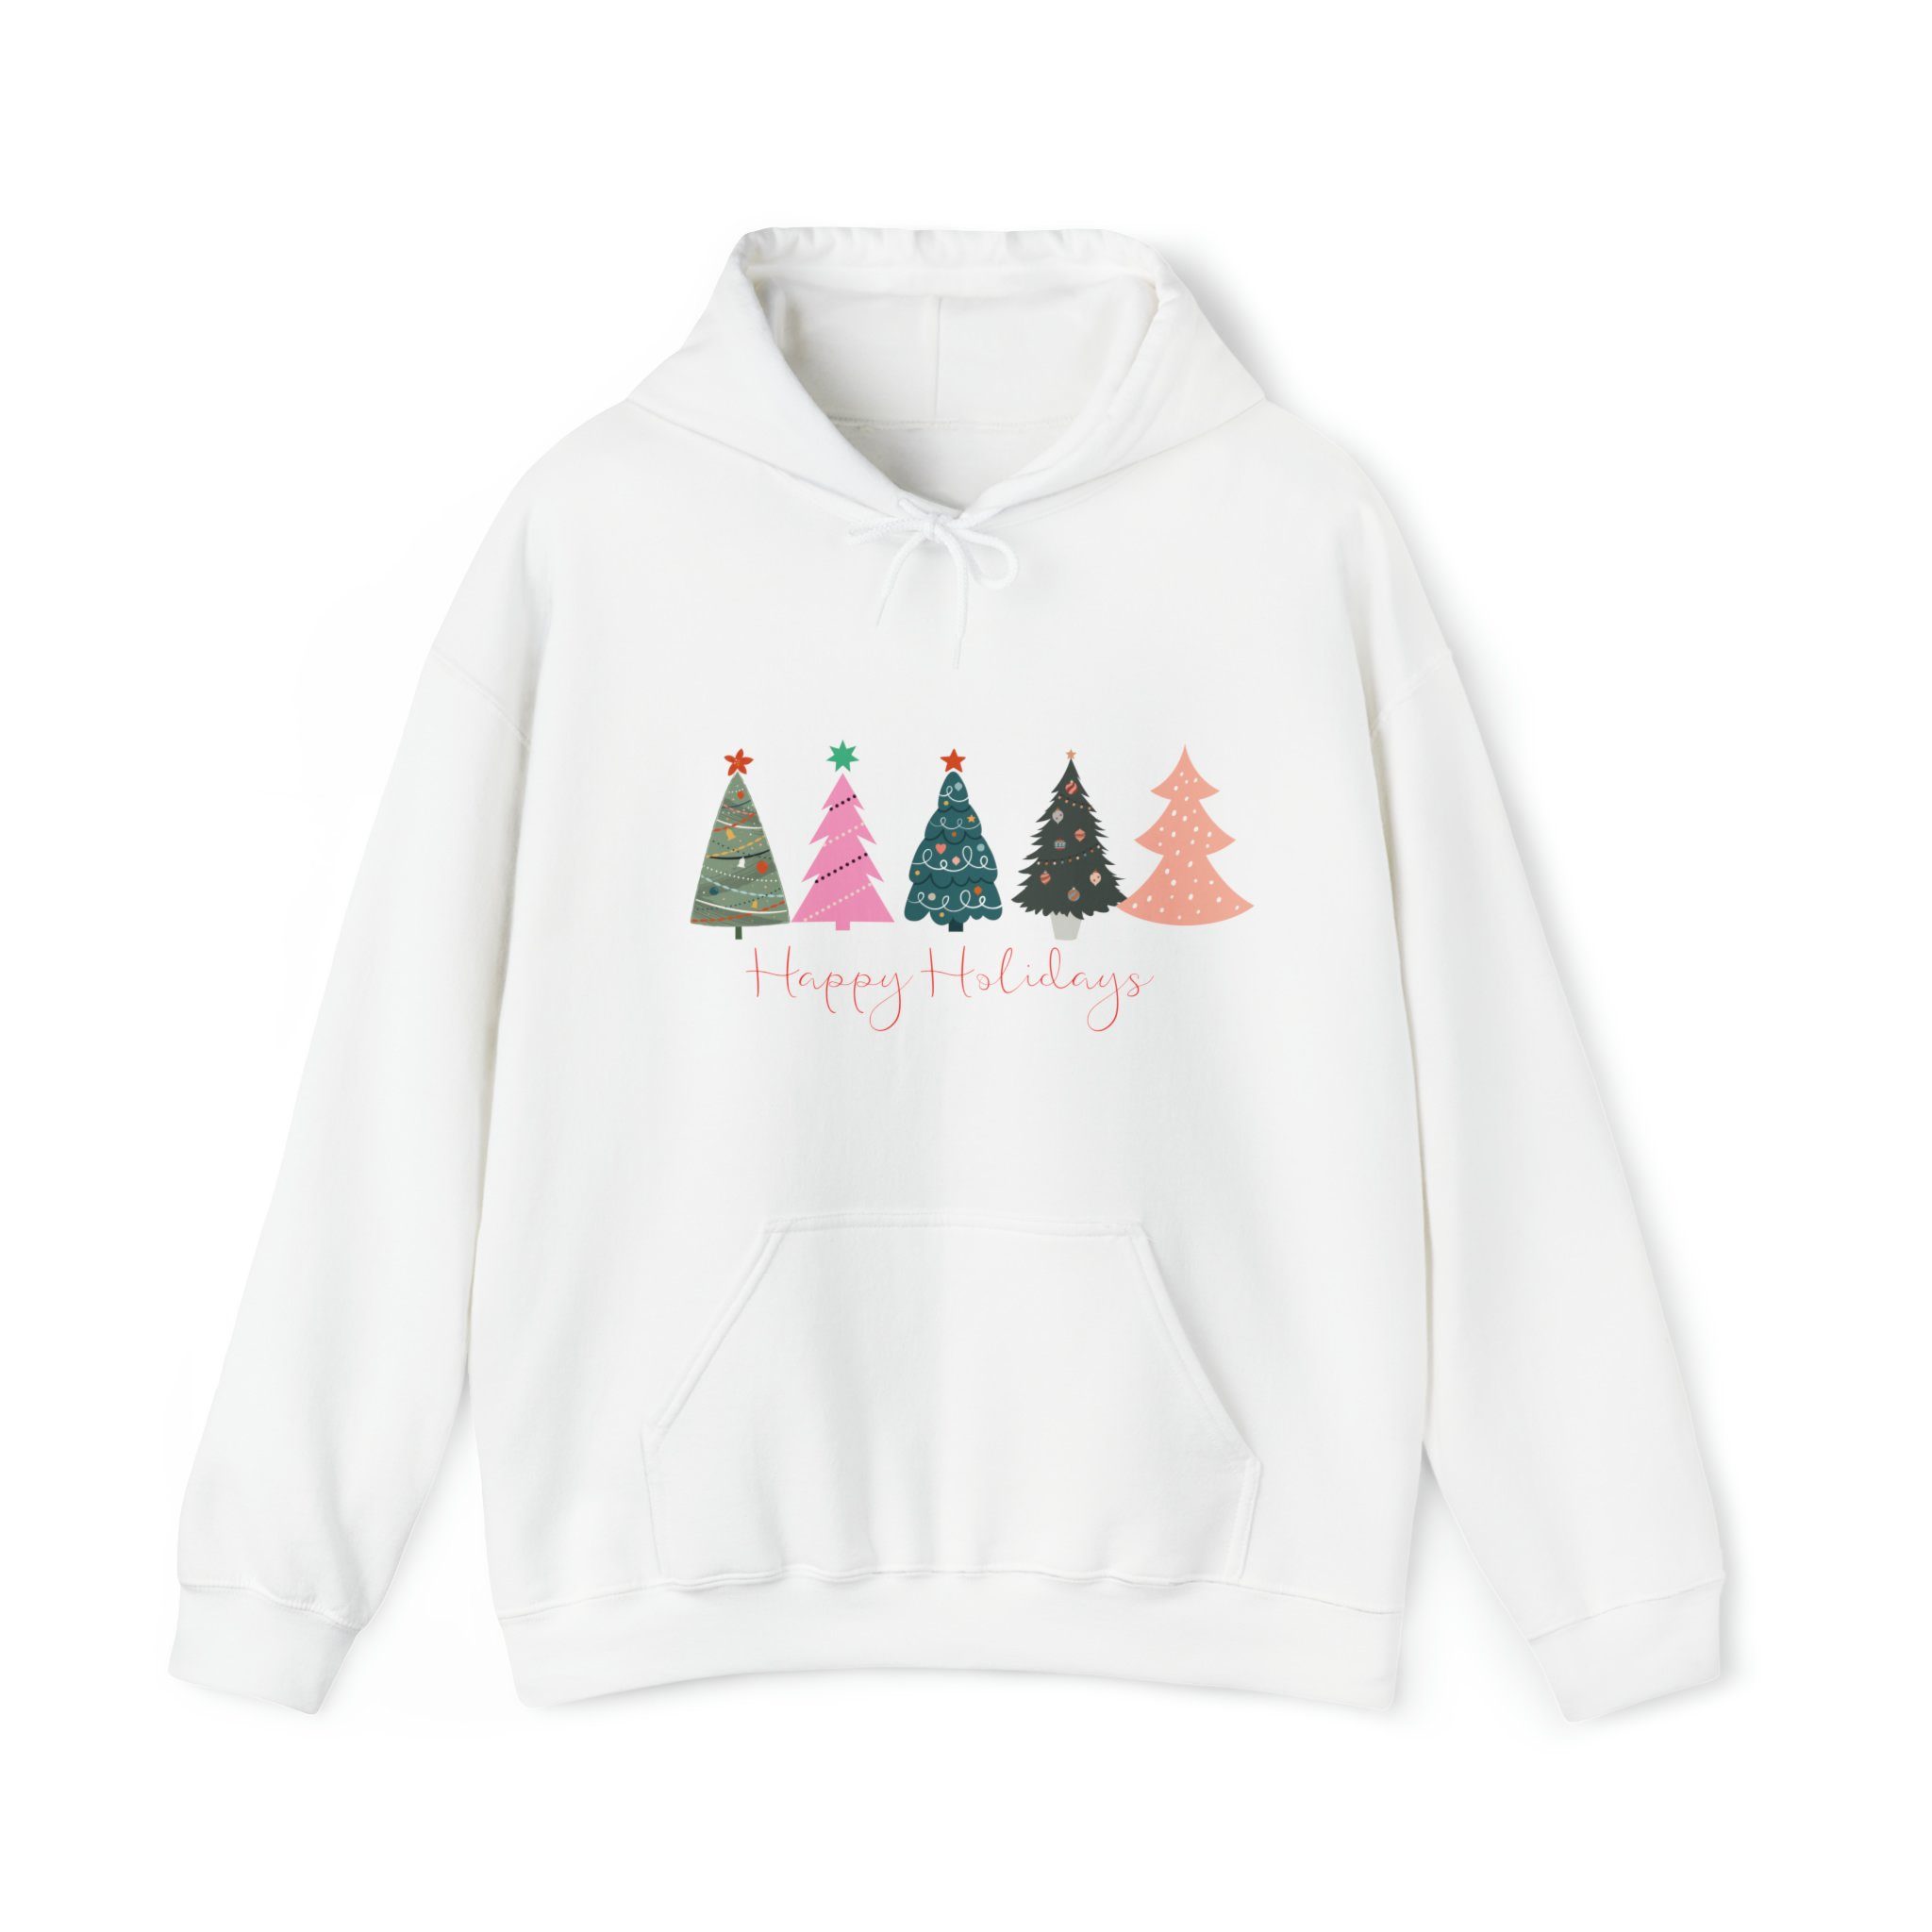 Quality Elegance Weihnachtssweatshirt Christmas Unisex Sweatshirt, Christmas Hoodie Weiß Tree